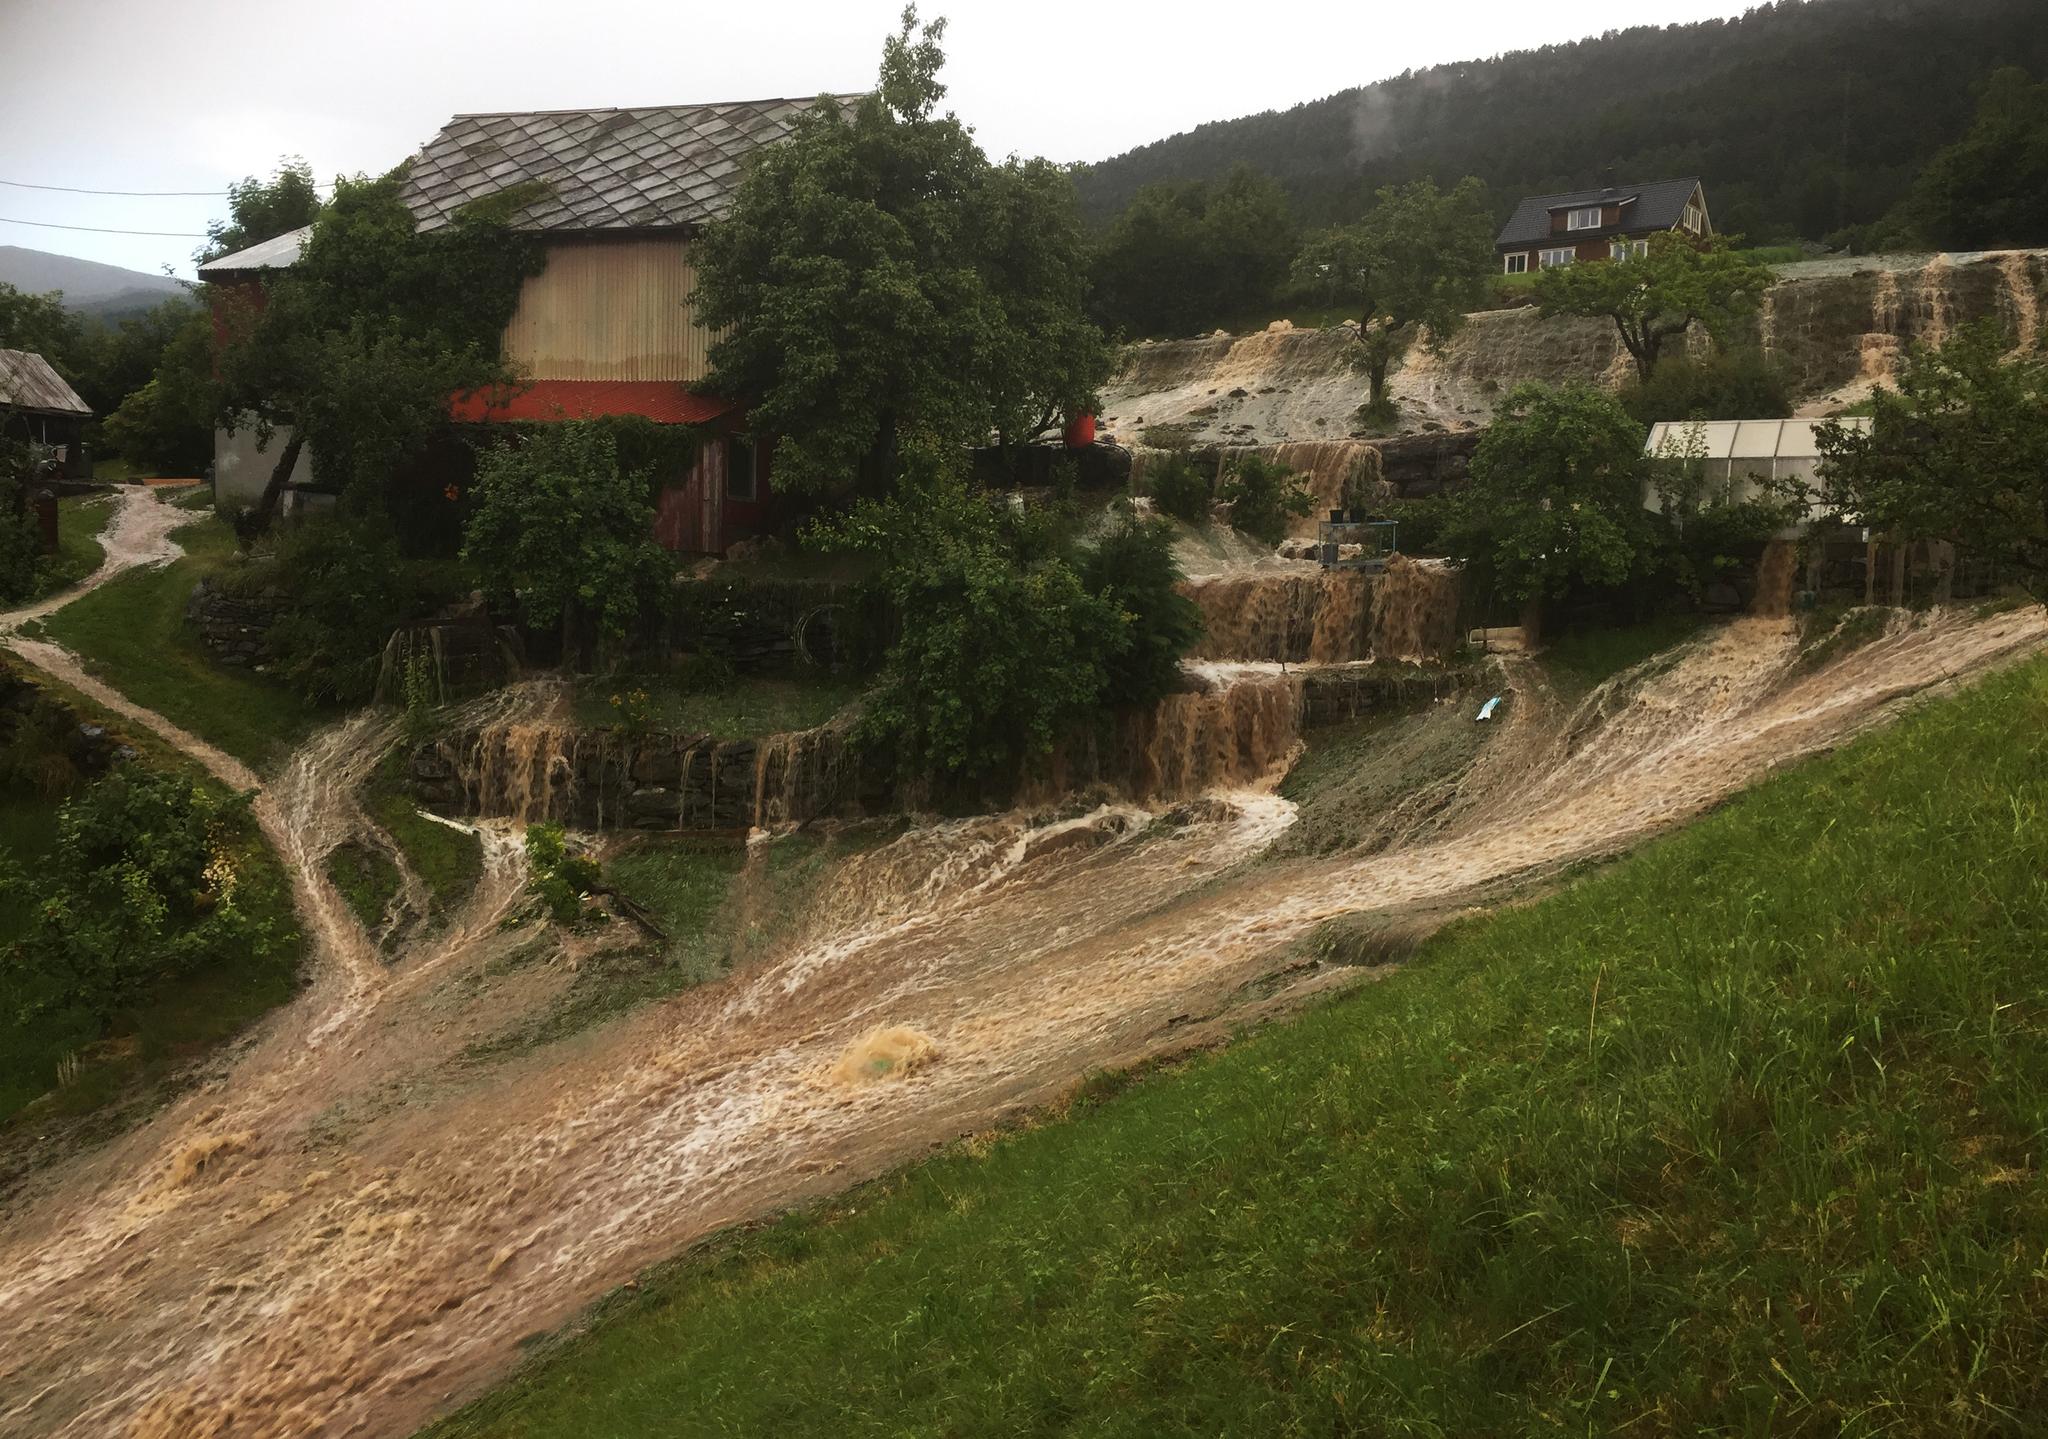 Store nedbørsmengder fører til flom i Reed i Gloppen kommune i Sogn og Fjordane og flere andre i Sør-Norge. Foto: Runar Sandnes / NTB scanpix